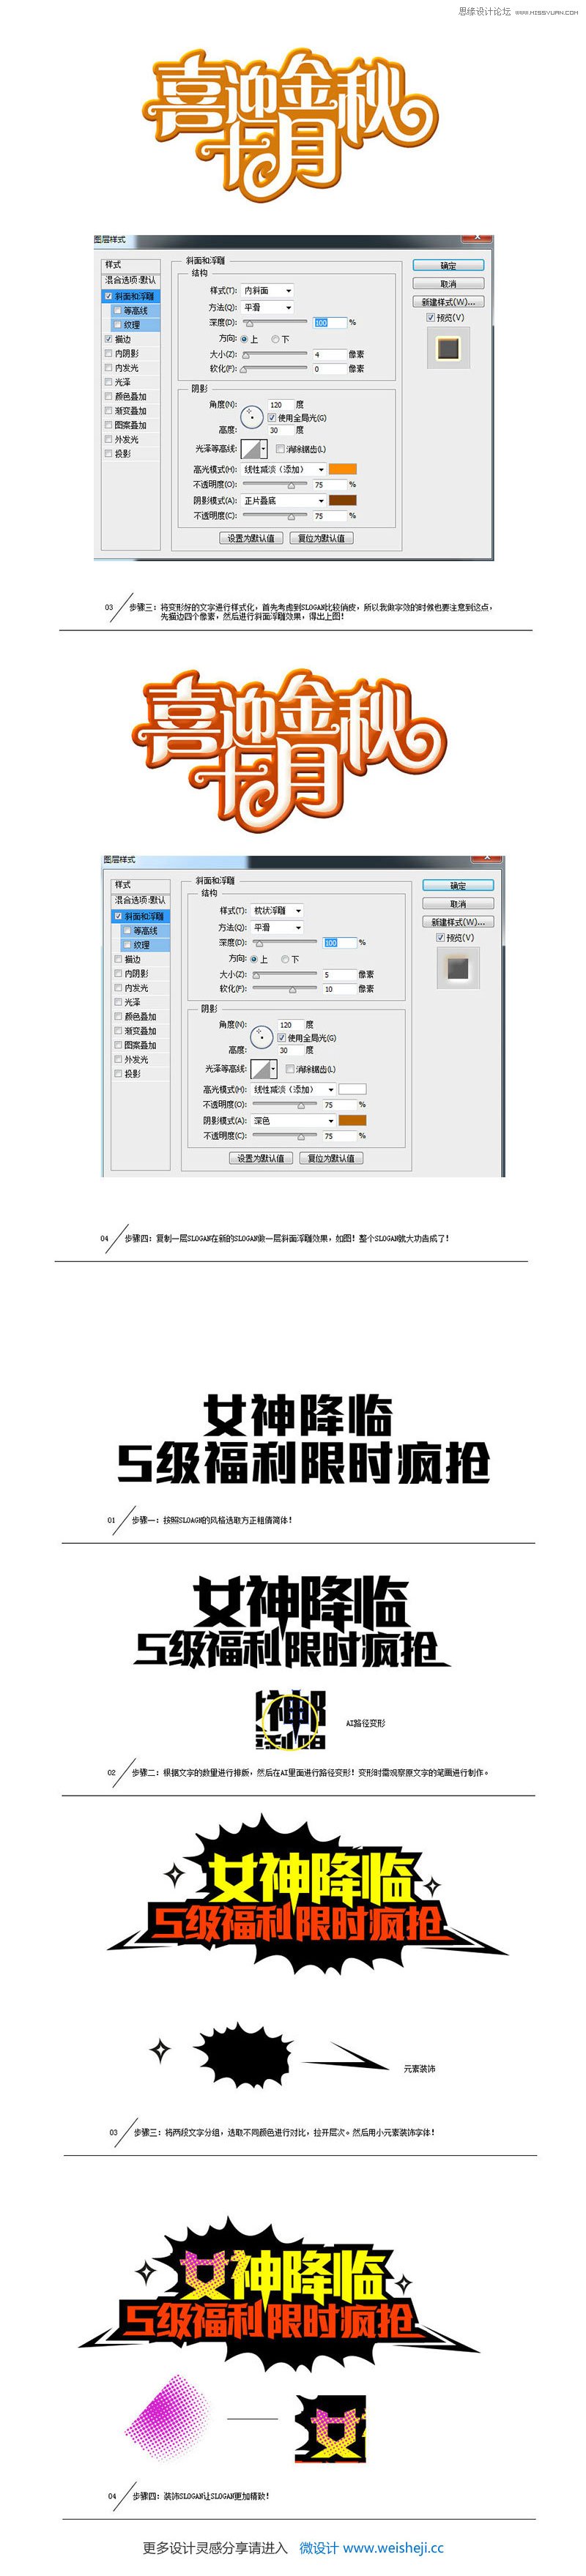 详细解析中文海报字体设计心得技巧,PS教程,图老师教程网